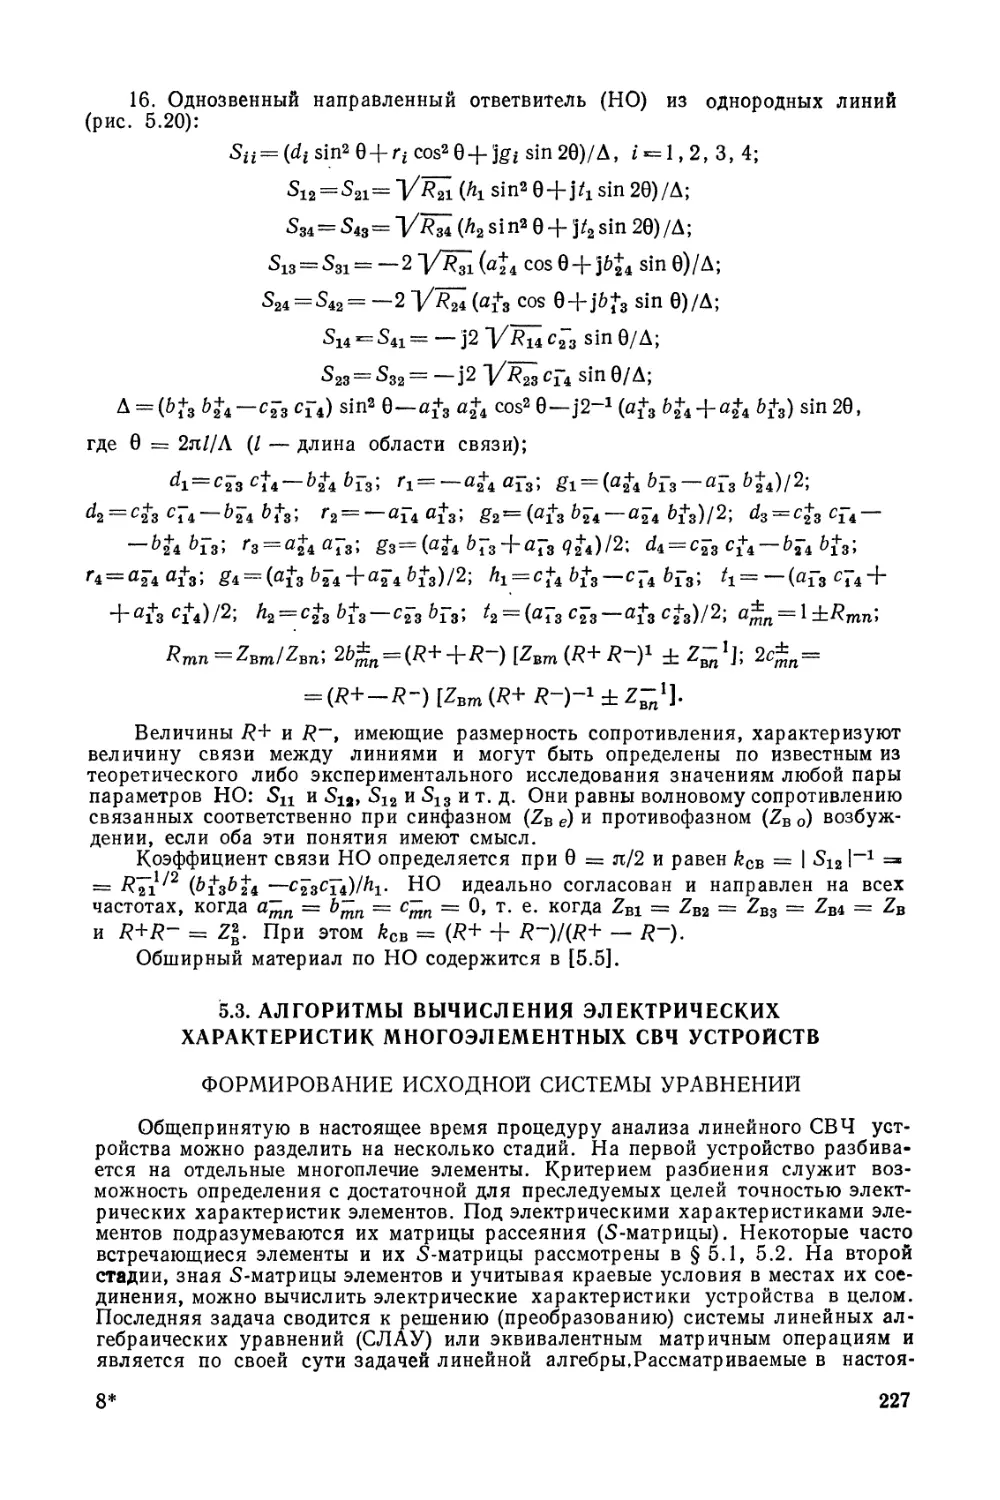 5.3. Алгоритмы вычисления электрических характеристик многоэлементных СВЧ устройств
Формирование исходной системы уравнений